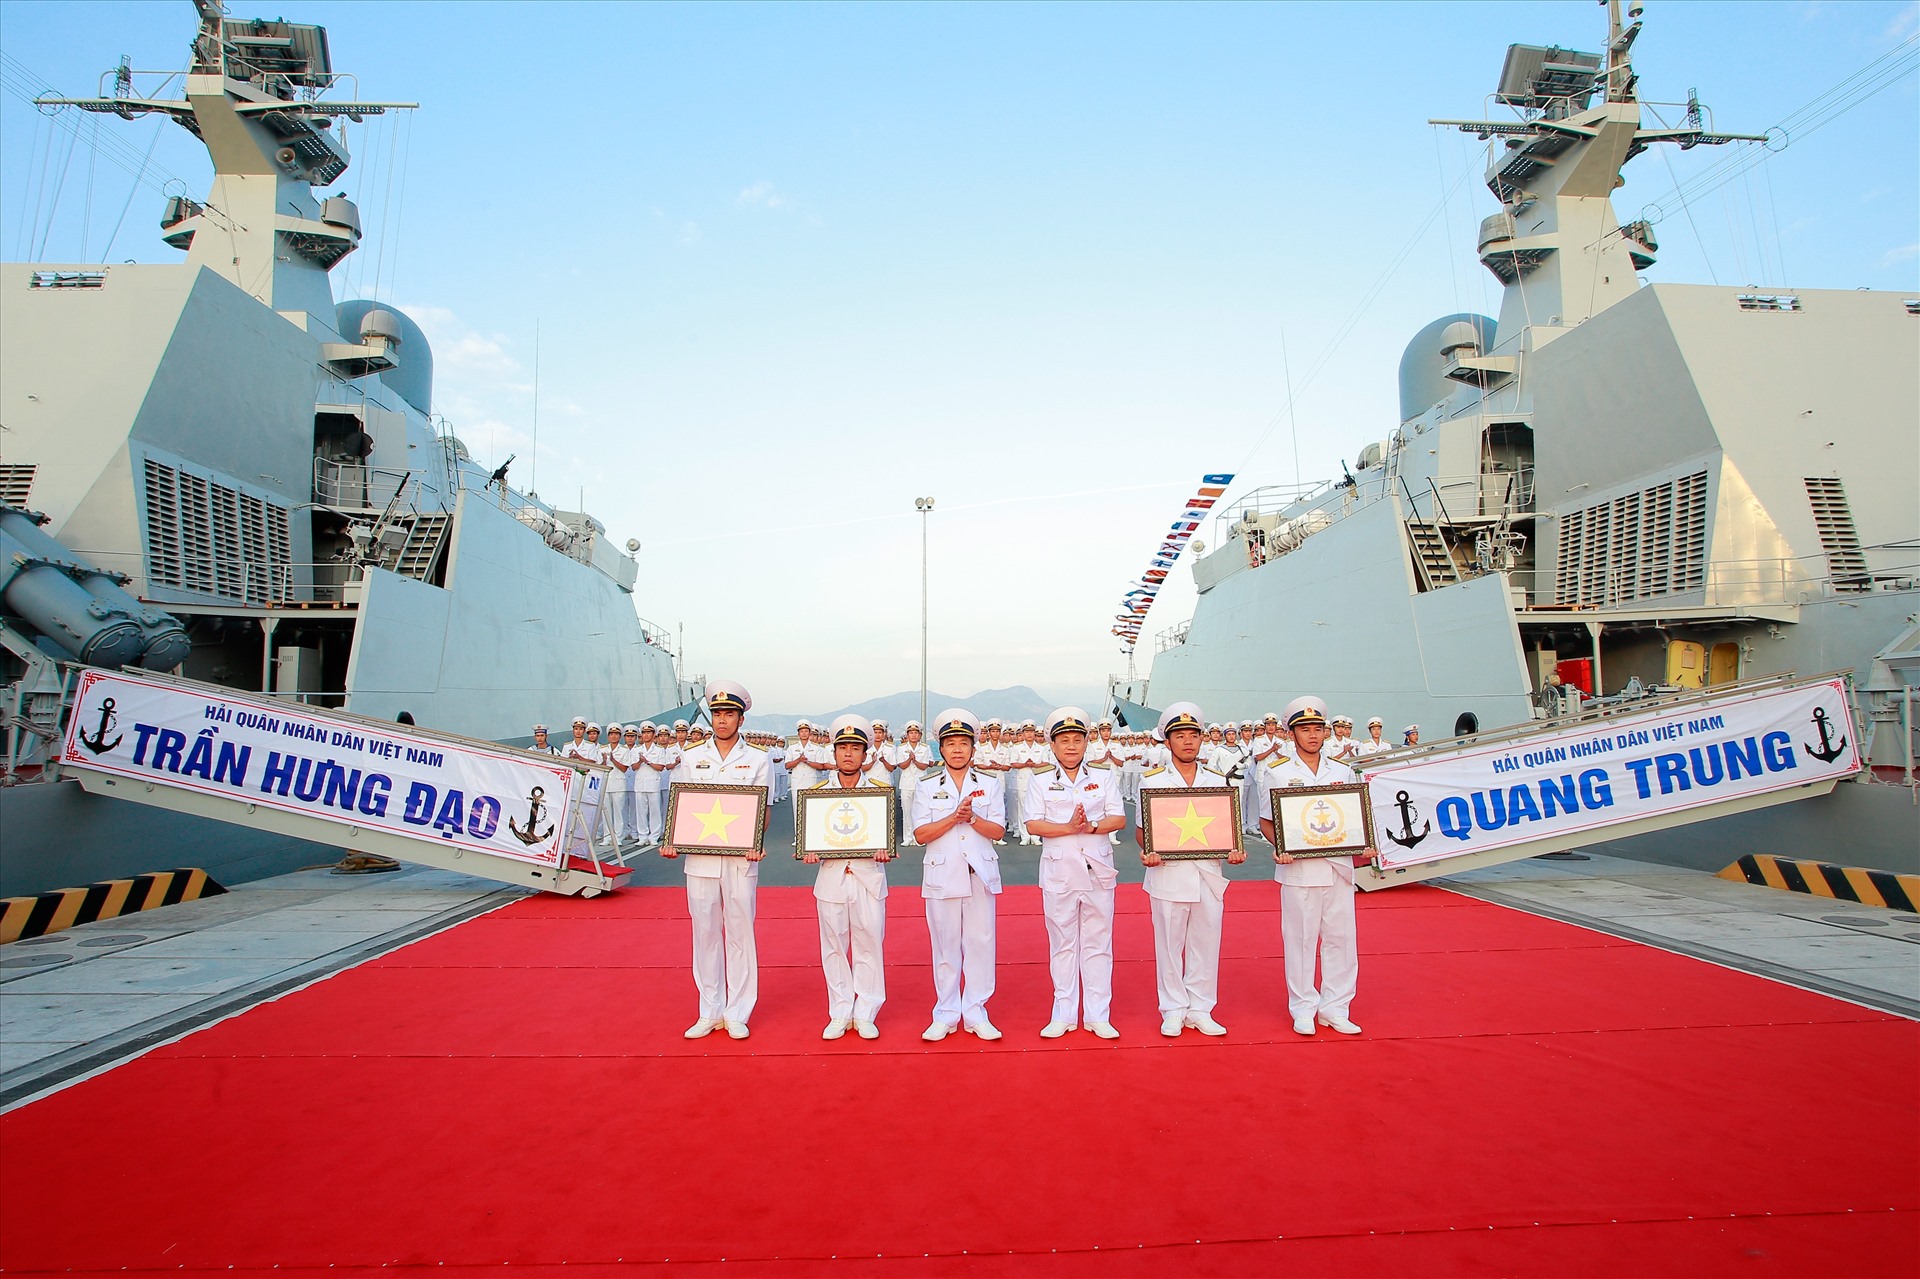 Lễ thượng cờ Tàu 015 - Trần Hưng Đạo và Tàu 016 - Quang Trung tại Vùng 4 Hải quân, ngày 6.2.2018. Ảnh tư liệu BTLSQSVN